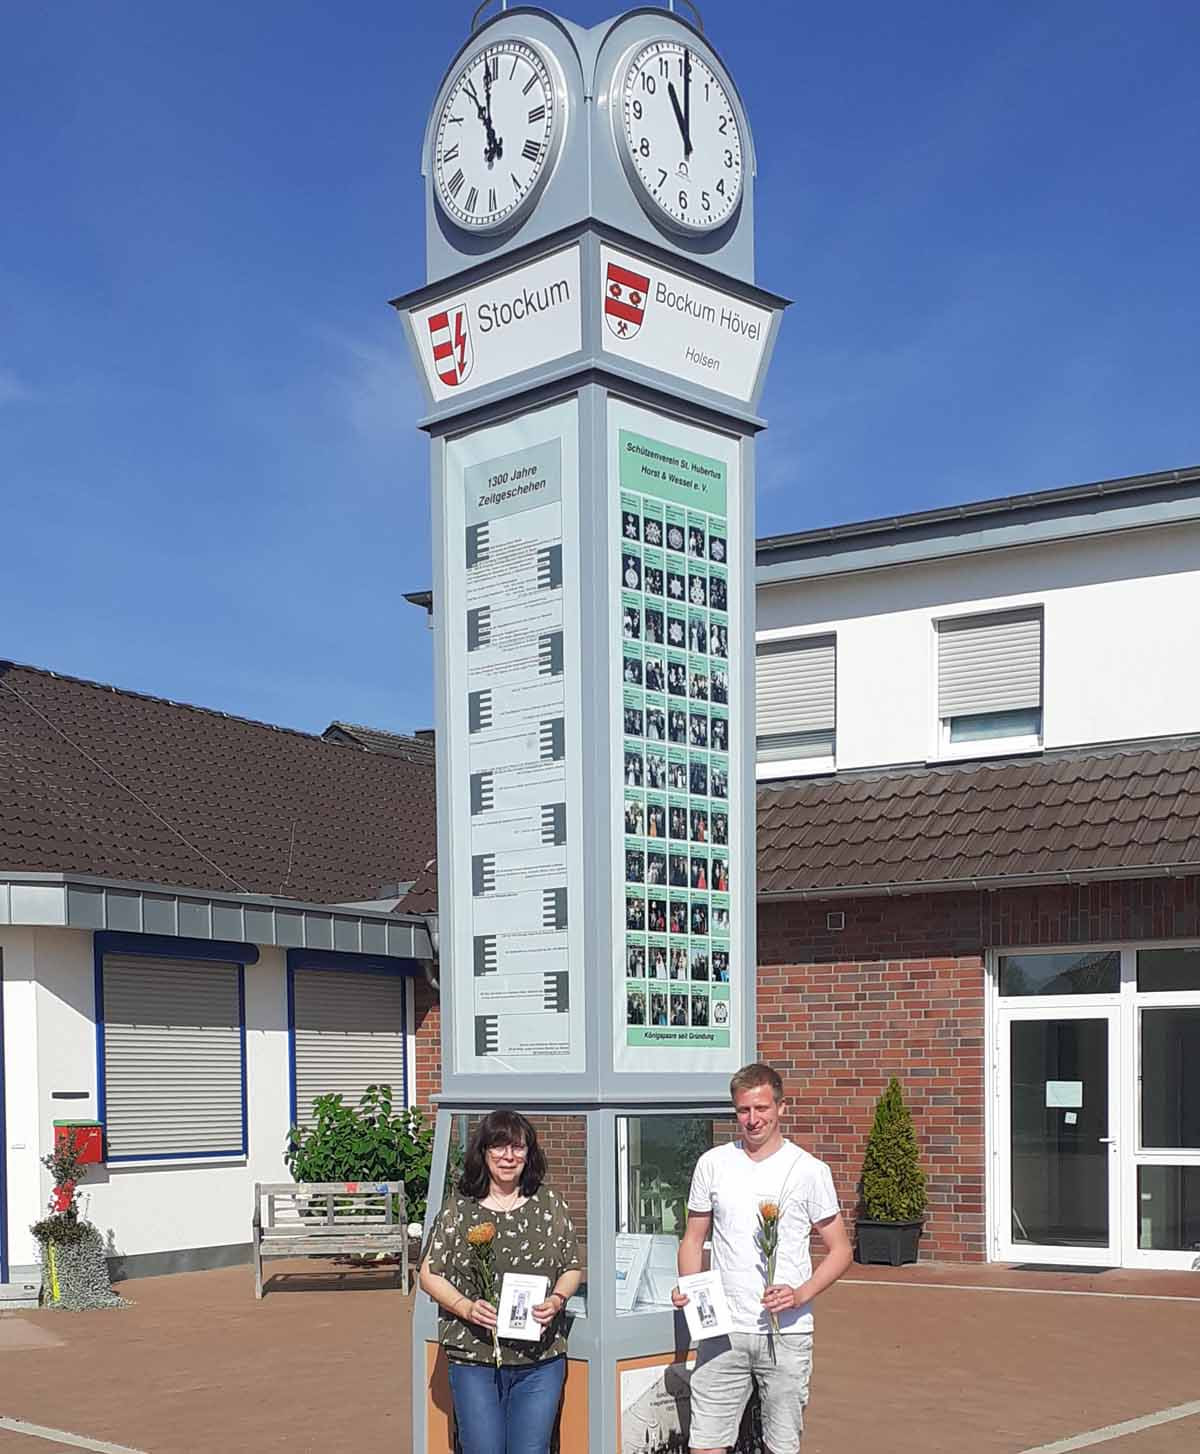 Zum zehnjährigen Bestehen im Juni Juni 2022 hat der Förderverein Horst und Wessel e. V. auf dem Dorfplatz eine Stele aufgestellt. Zugleich hat er einen Wettbewerb zur Namensgebung ausgeschrieben. Sigrid Höring und Roman Dabbelt schlugen 